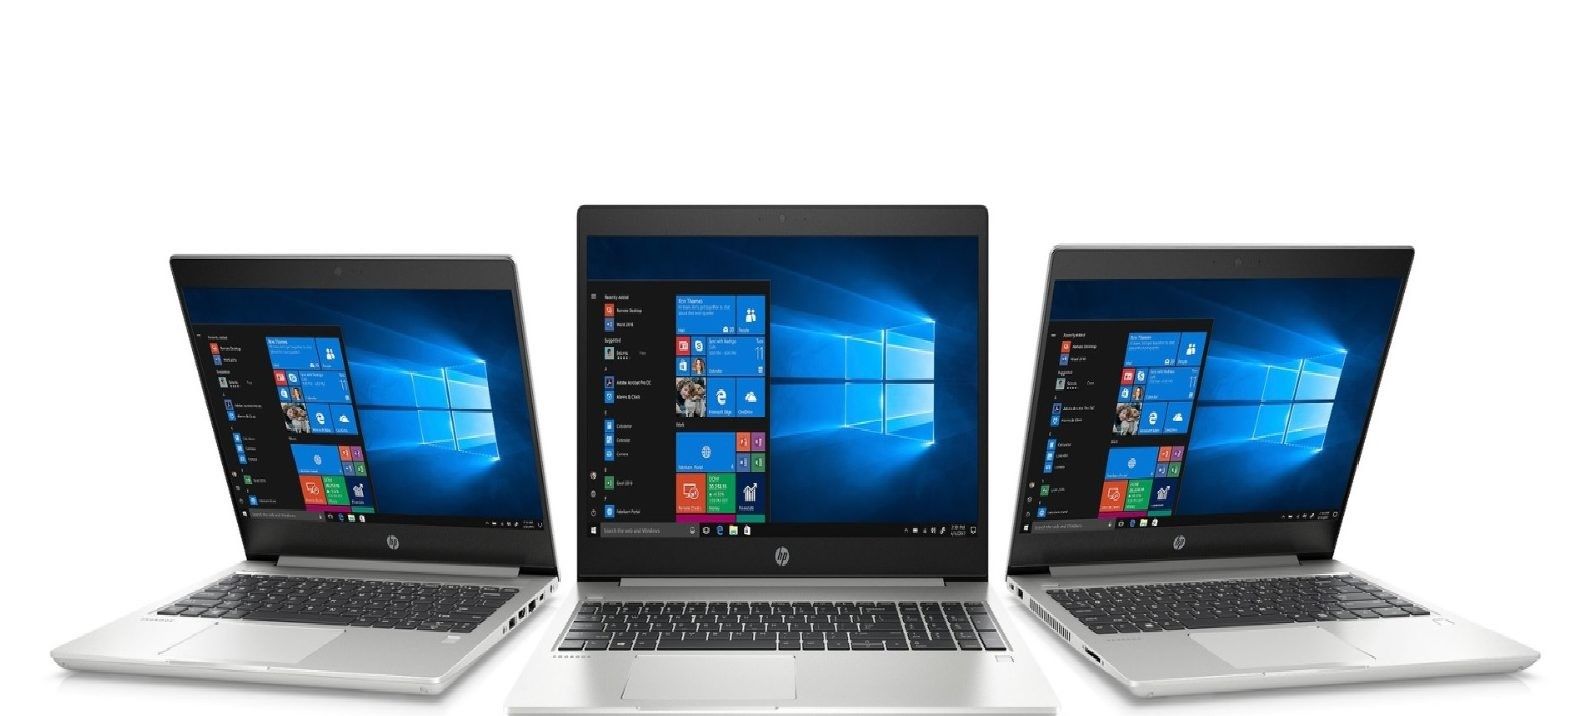 Recenzia notebooku HP ProBook 430, 440, 450 G6: skvelá voľba pre profesionálov